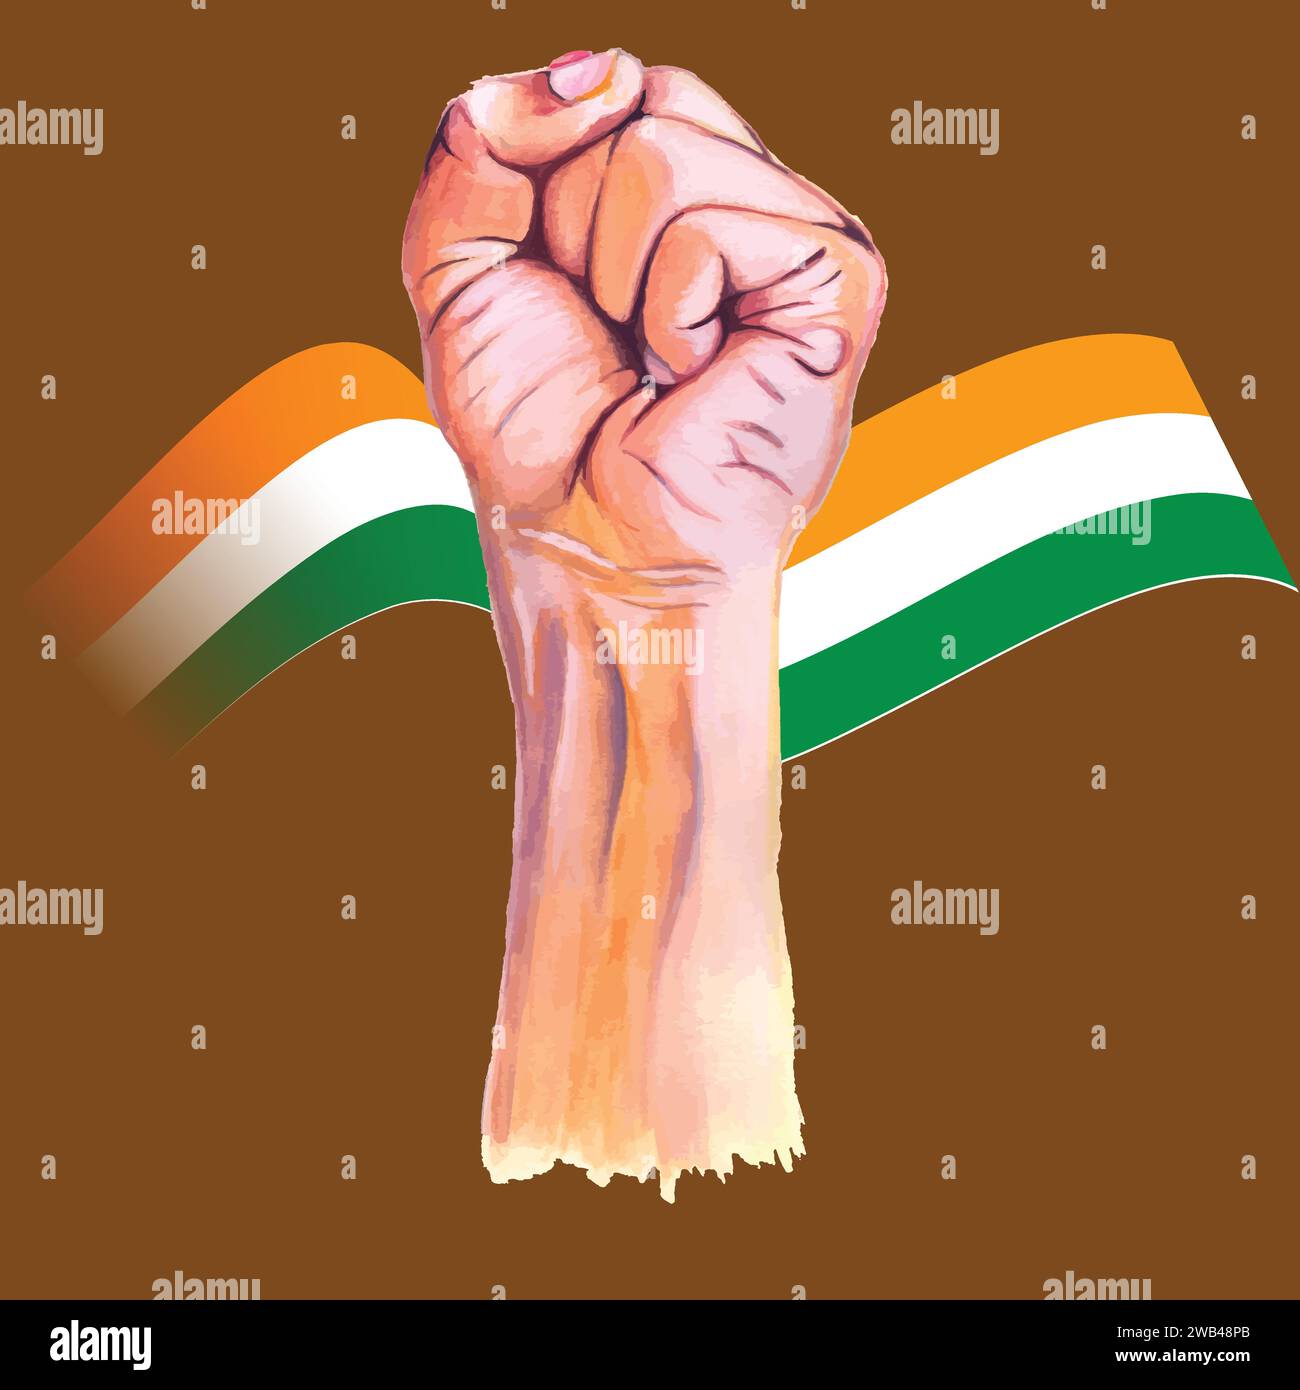 Nationaler Jugendtag Indiens, Vorlage für Hintergrund, Banner, Karte, Poster, soziale Medien, Webbanner, Magazin mit Textanschrift. Editierbarer Vektor Stock Vektor